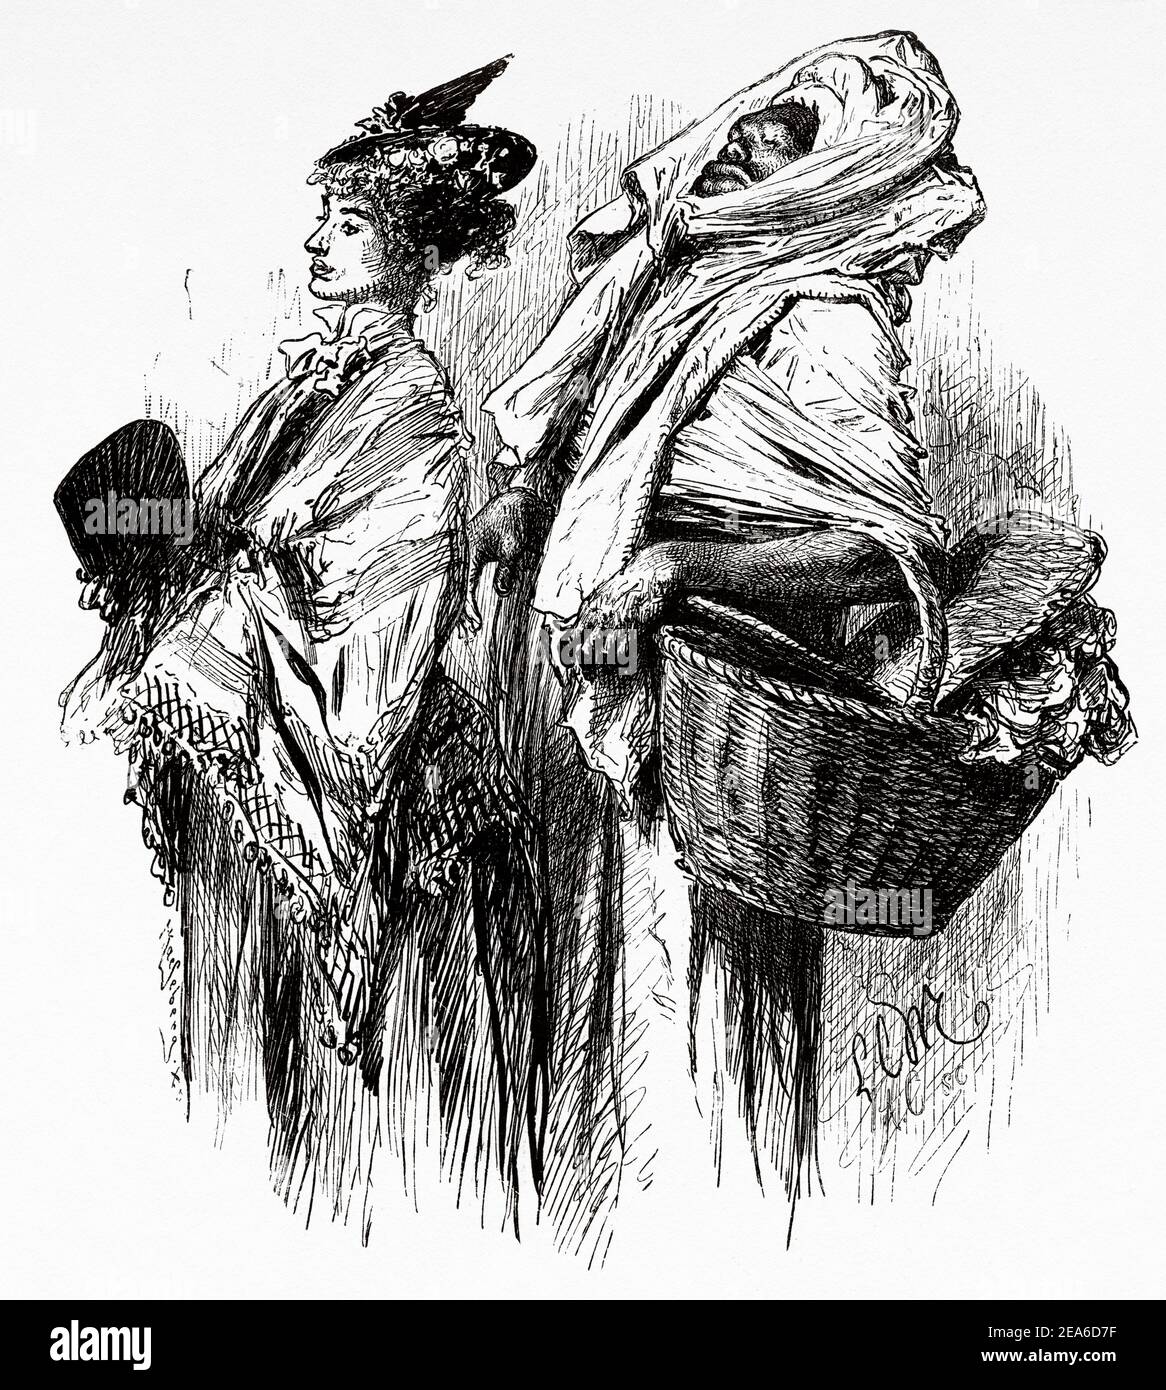 Europäische Dame von Alexandria mit ihrem schwarzen Diener. Alte Ägypten Geschichte. Alte 19th Jahrhundert gravierte Illustration von El Mundo Ilustrado 1879 Stockfoto